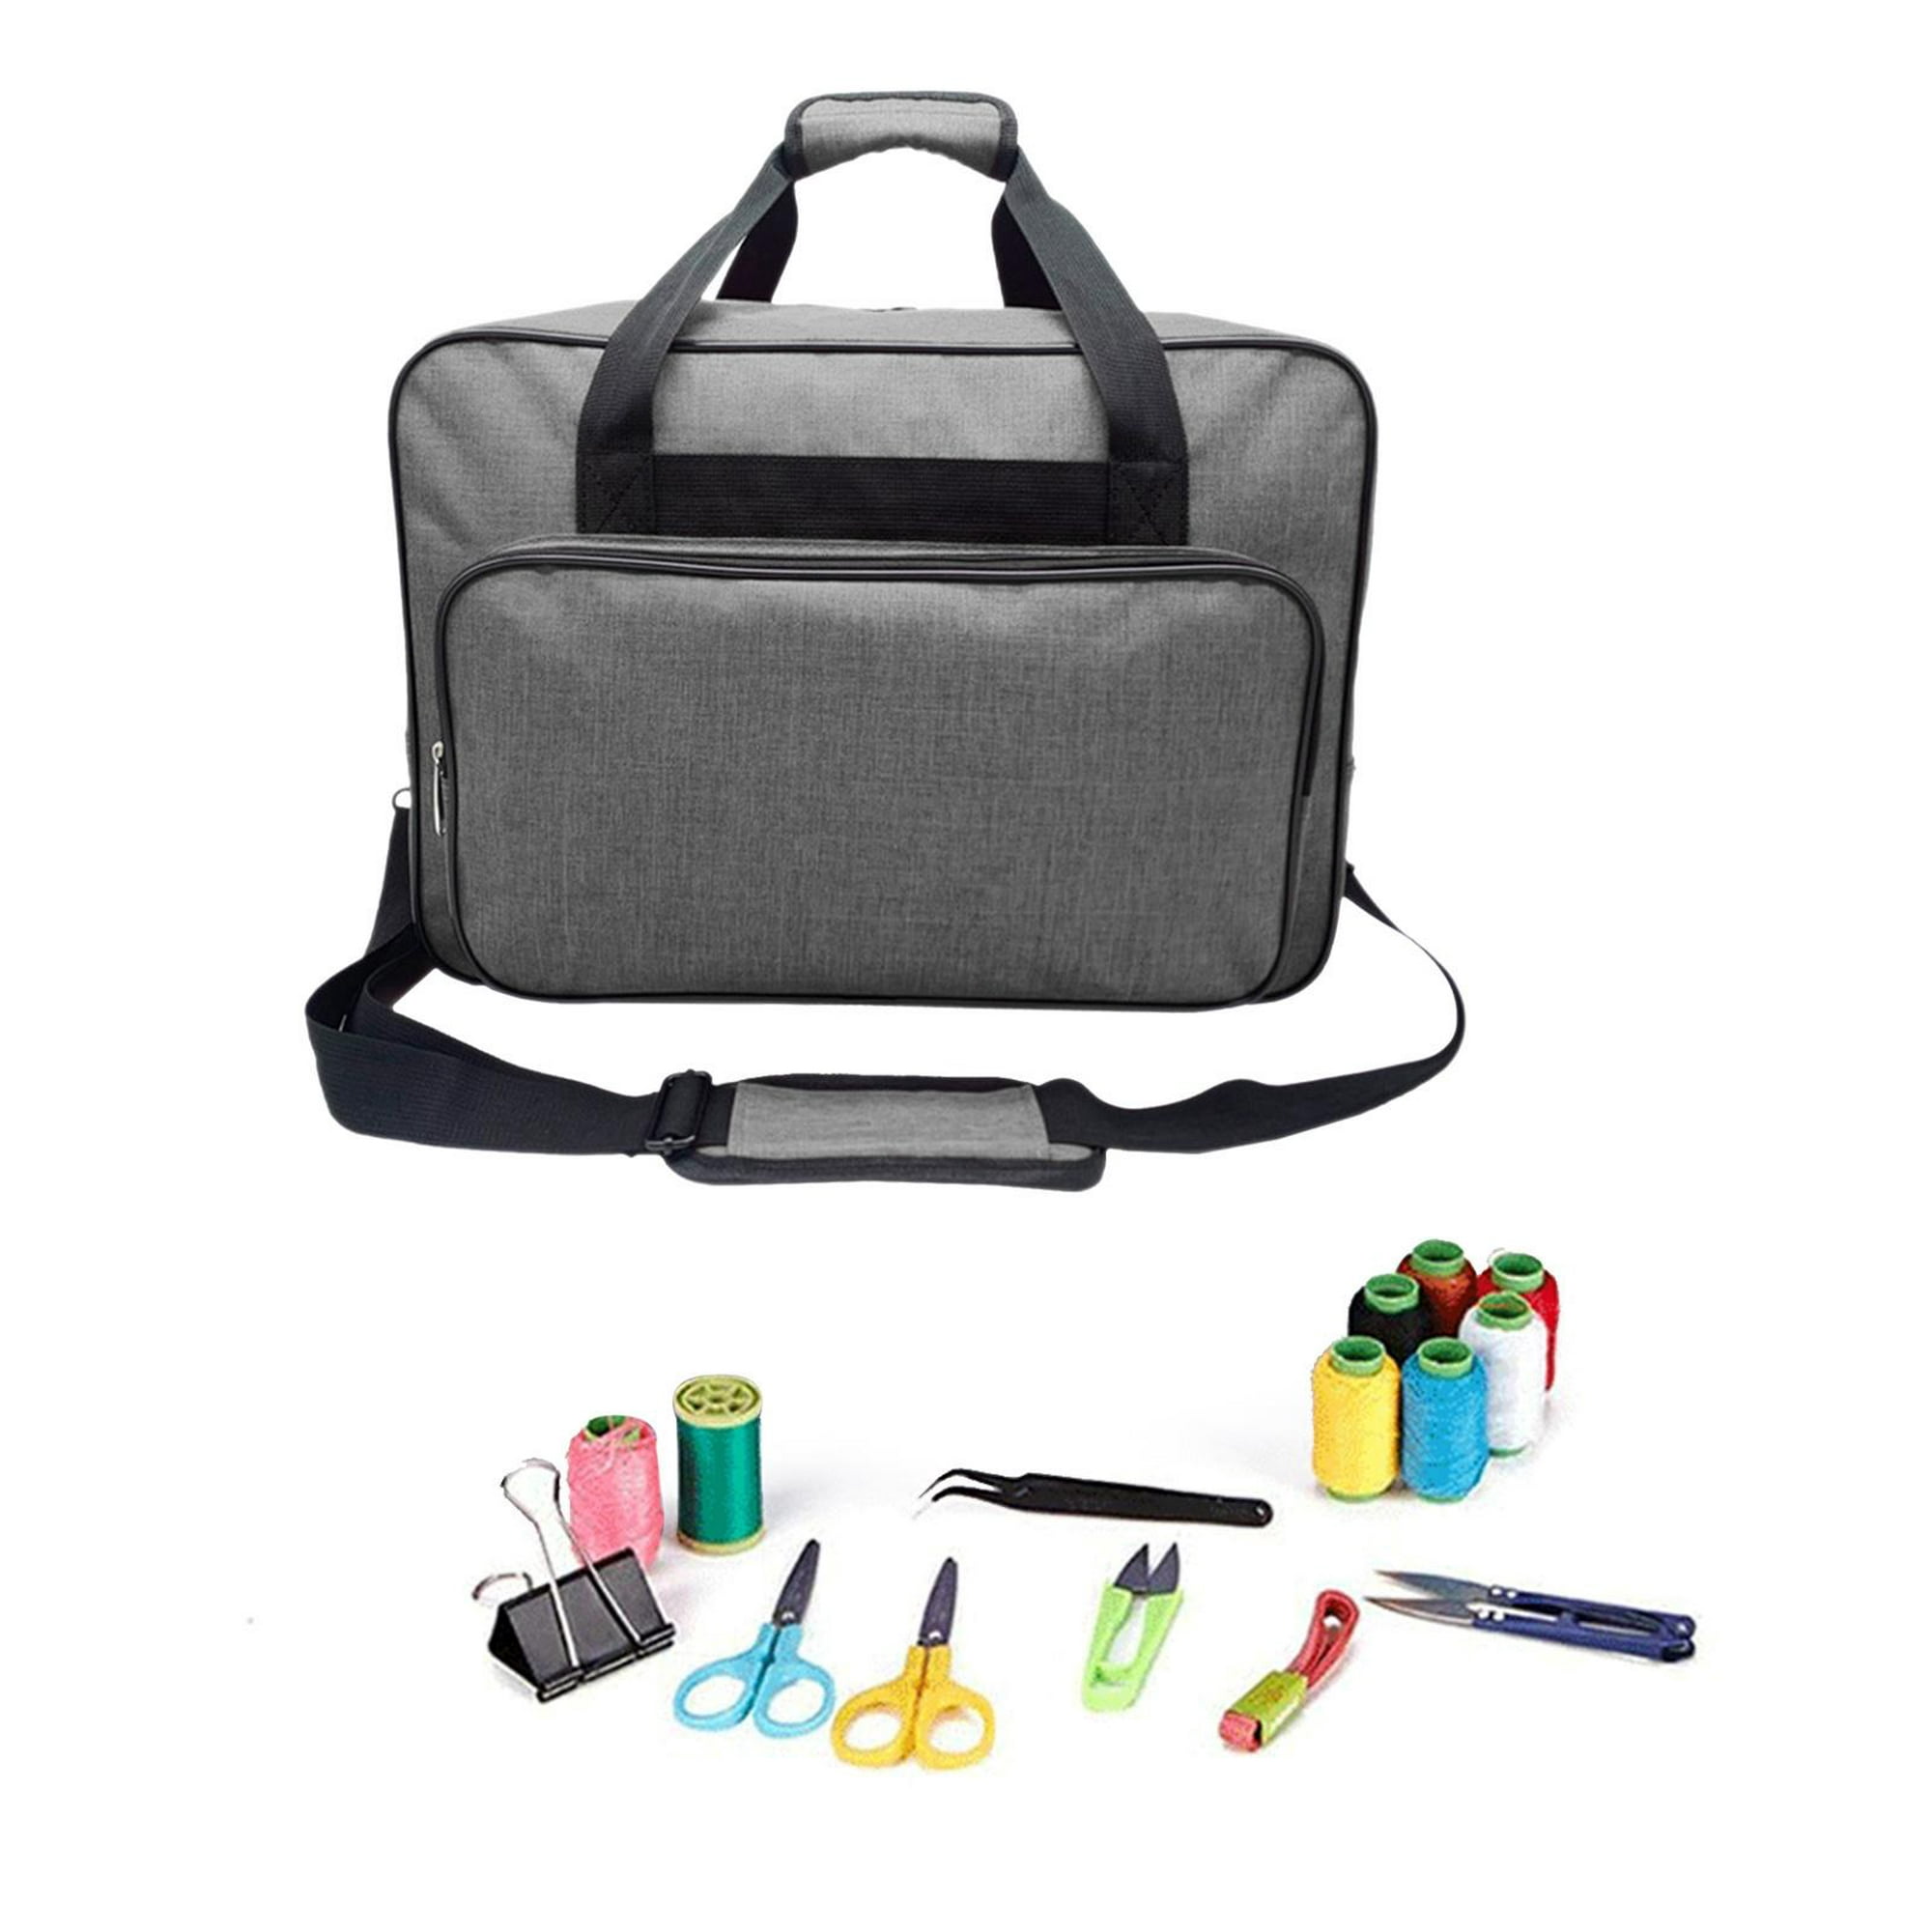 LUXJA Bolsa para máquina de coser, bolsa portátil compatible con la mayoría  de máquinas de coser Singer, Brother y accesorios de costura adicionales